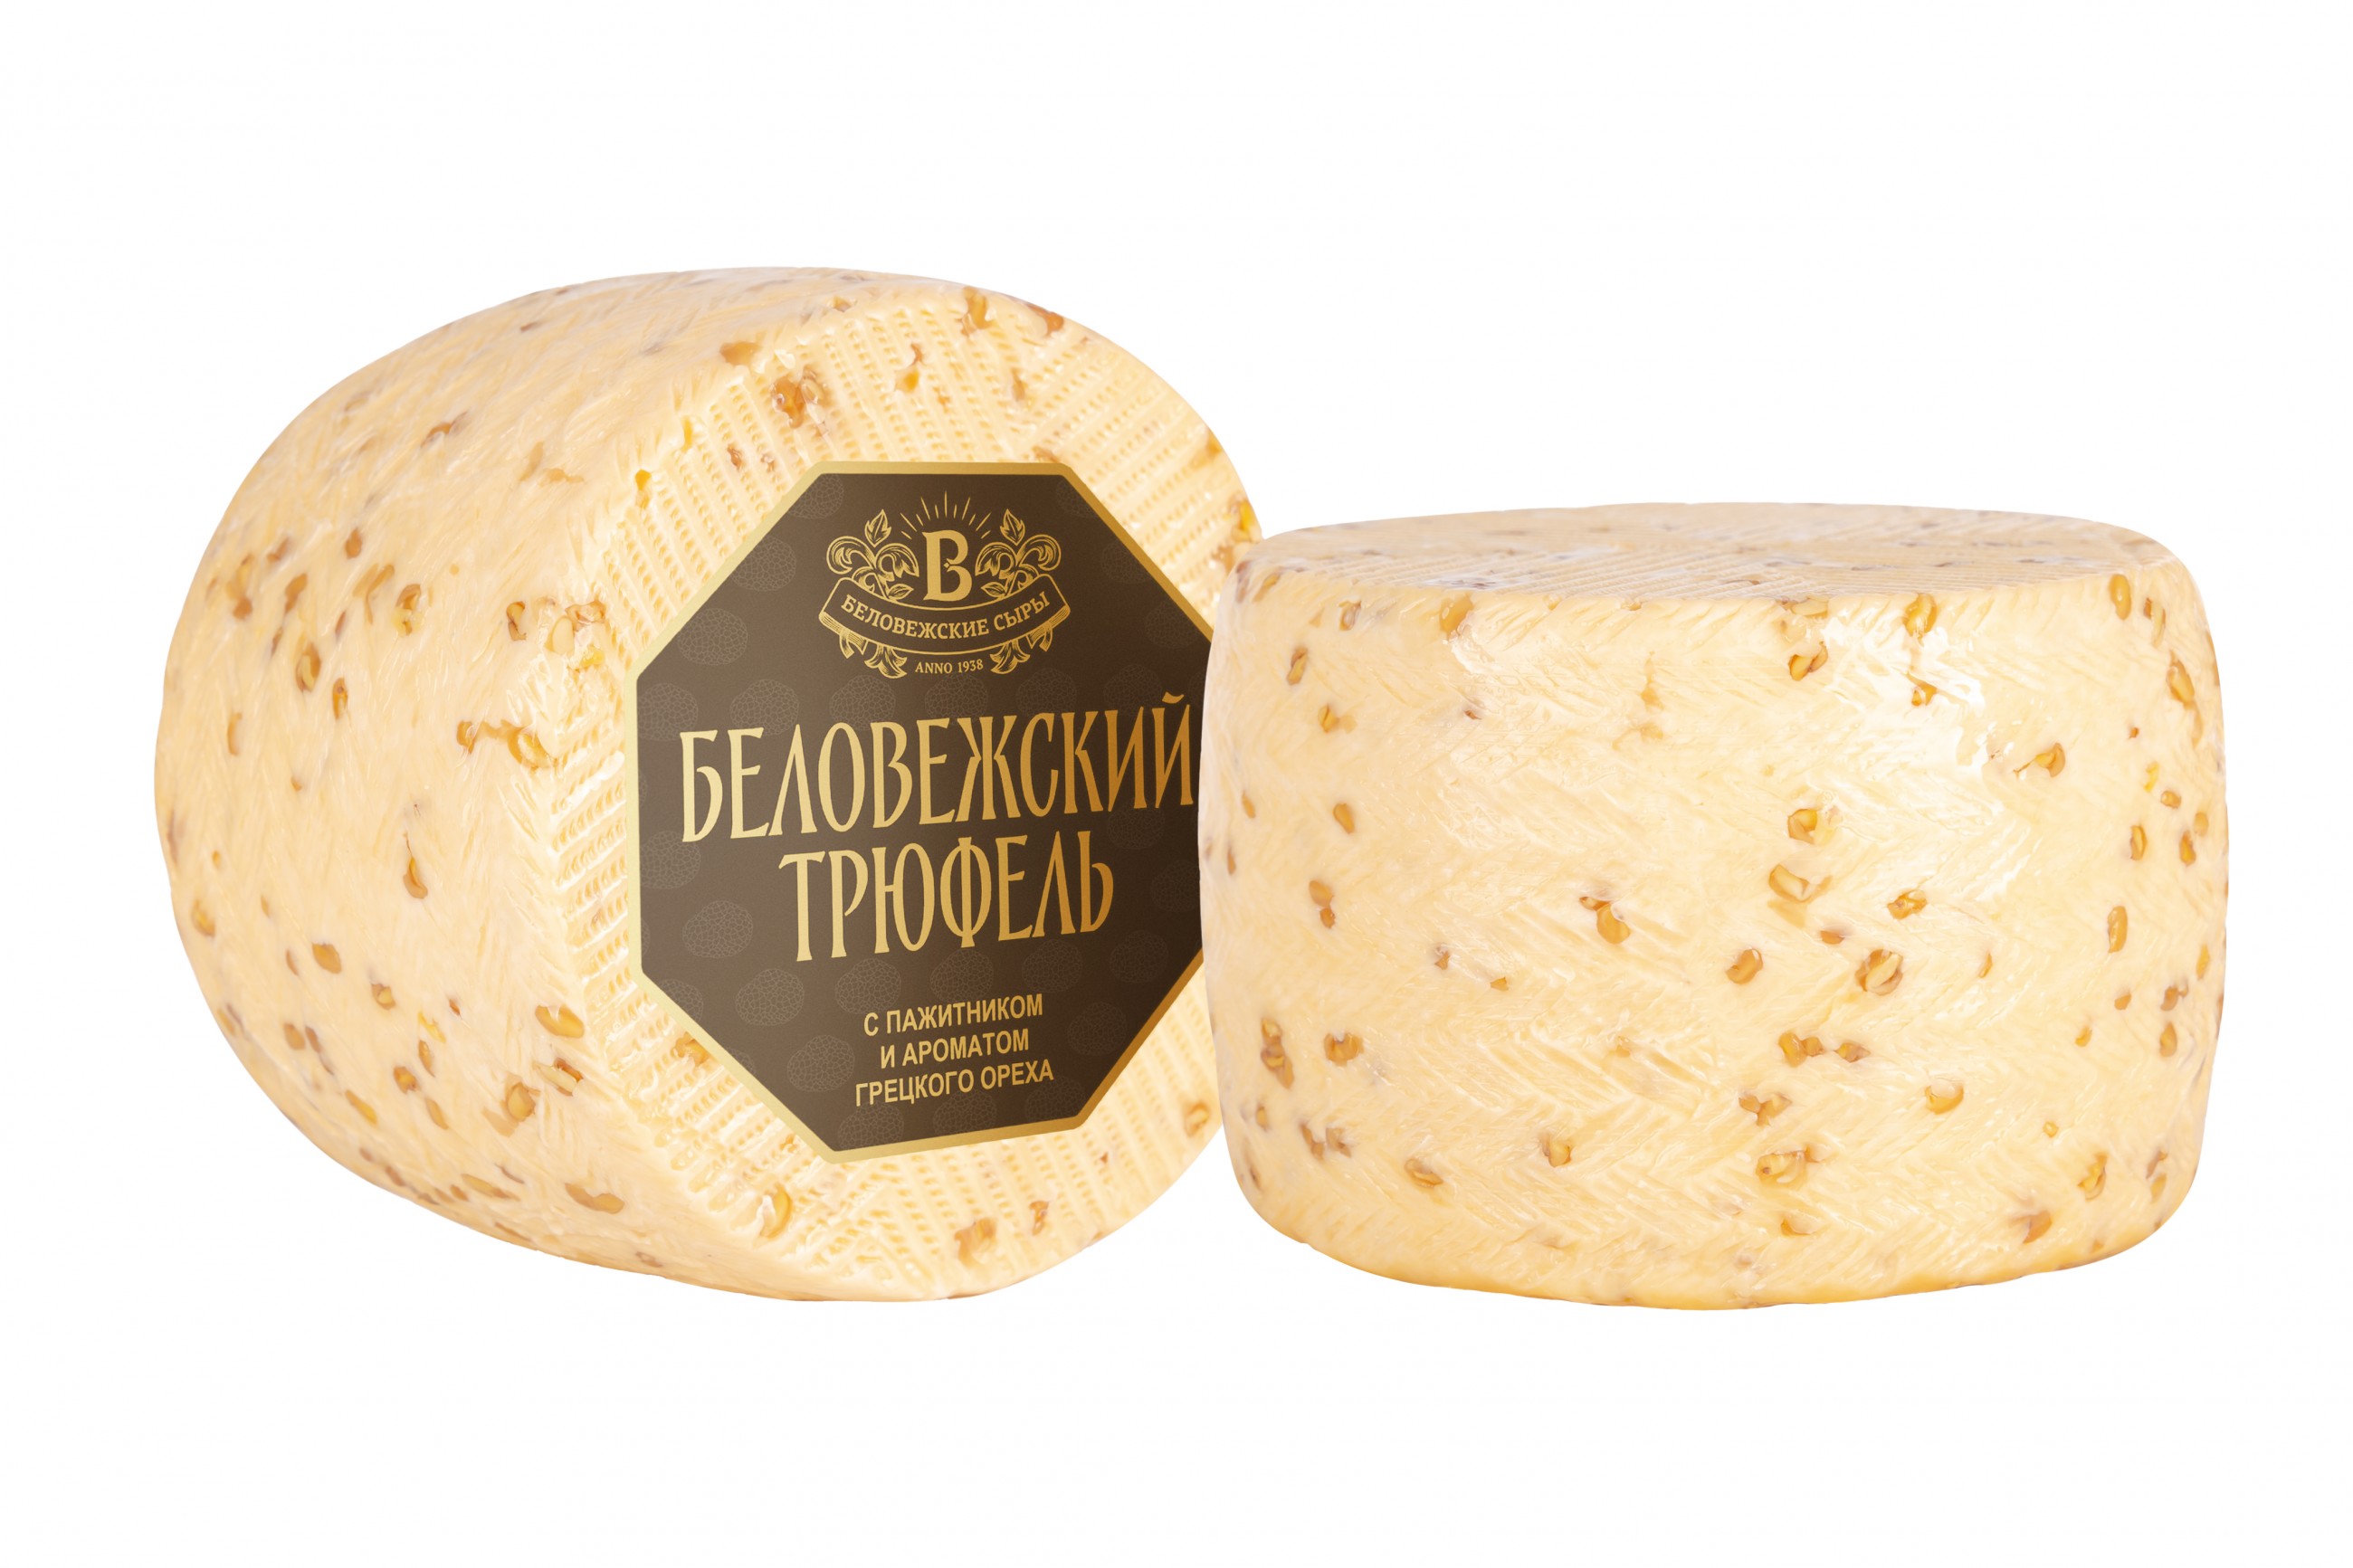 Сыр "Беловежский трюфель" с пажитником и ароматом грецкого ореха | Интернет-магазин Gostpp